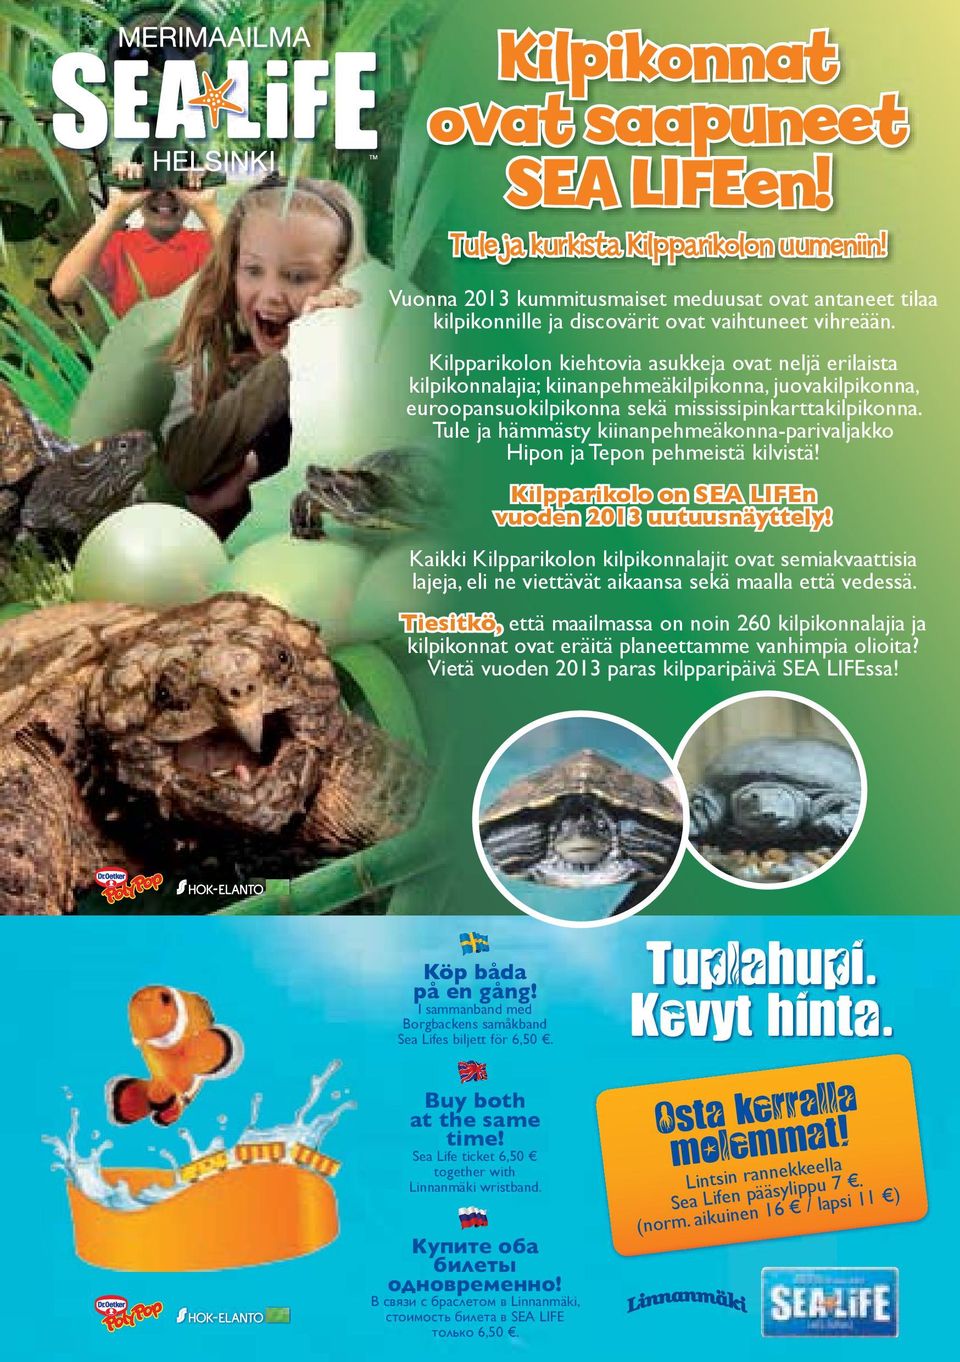 Tule ja hämmästy kiinanpehmeäkonna-parivaljakko Hipon ja Tepon pehmeistä kilvistä! Kilpparikolo on SEA LIFEn vuoden 2013 uutuusnäyttely!